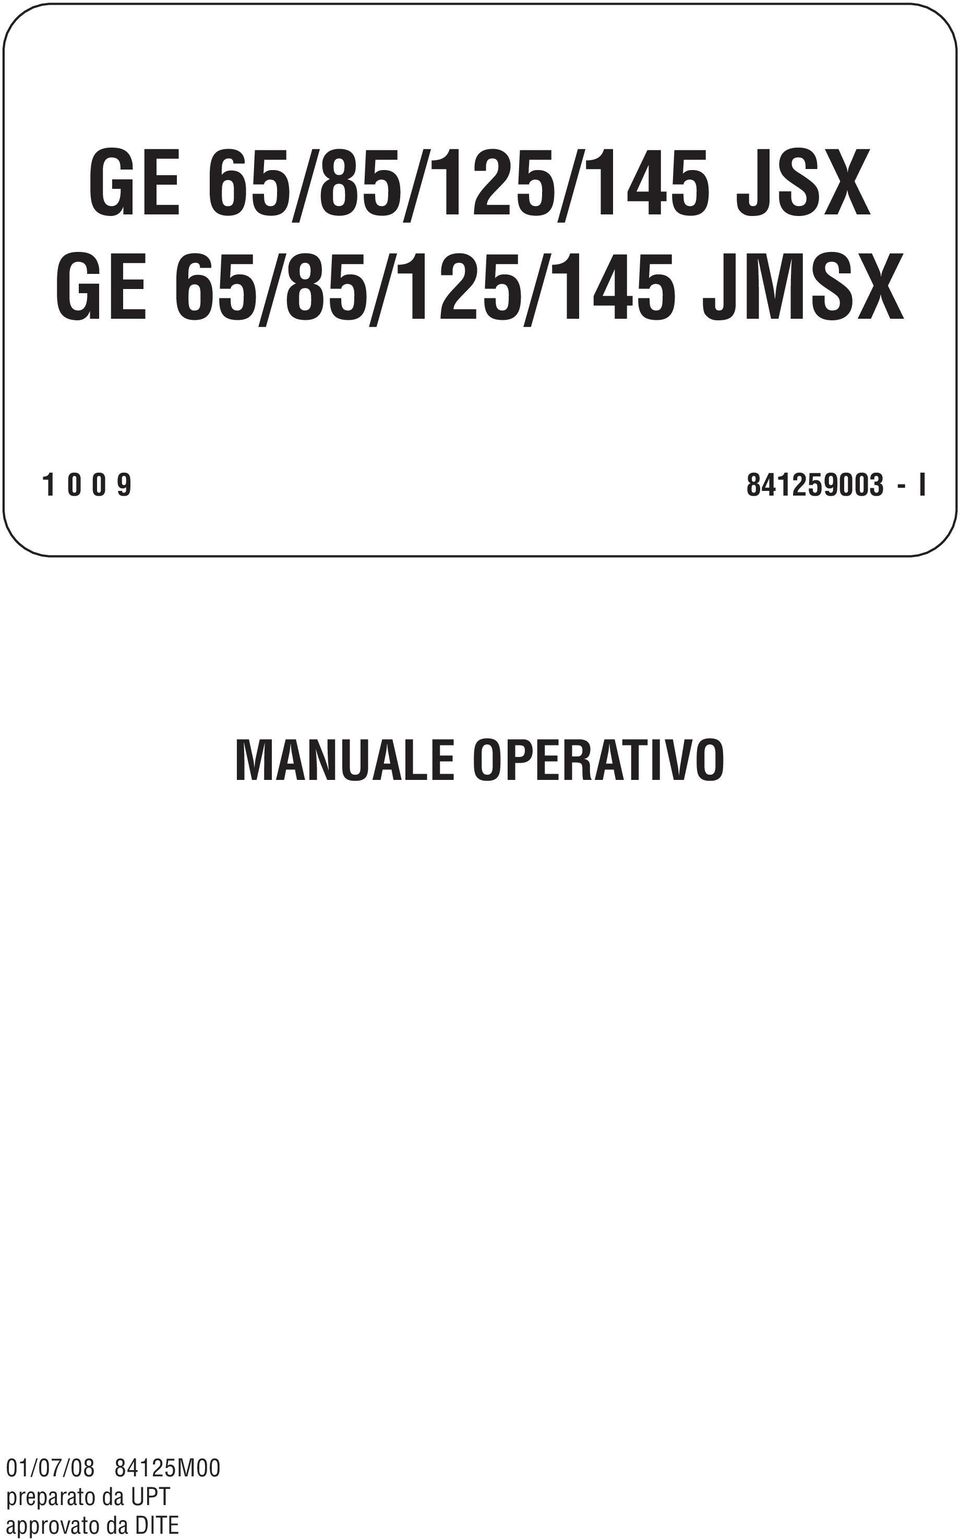 841259003 - I ANUALE OPERATIVO